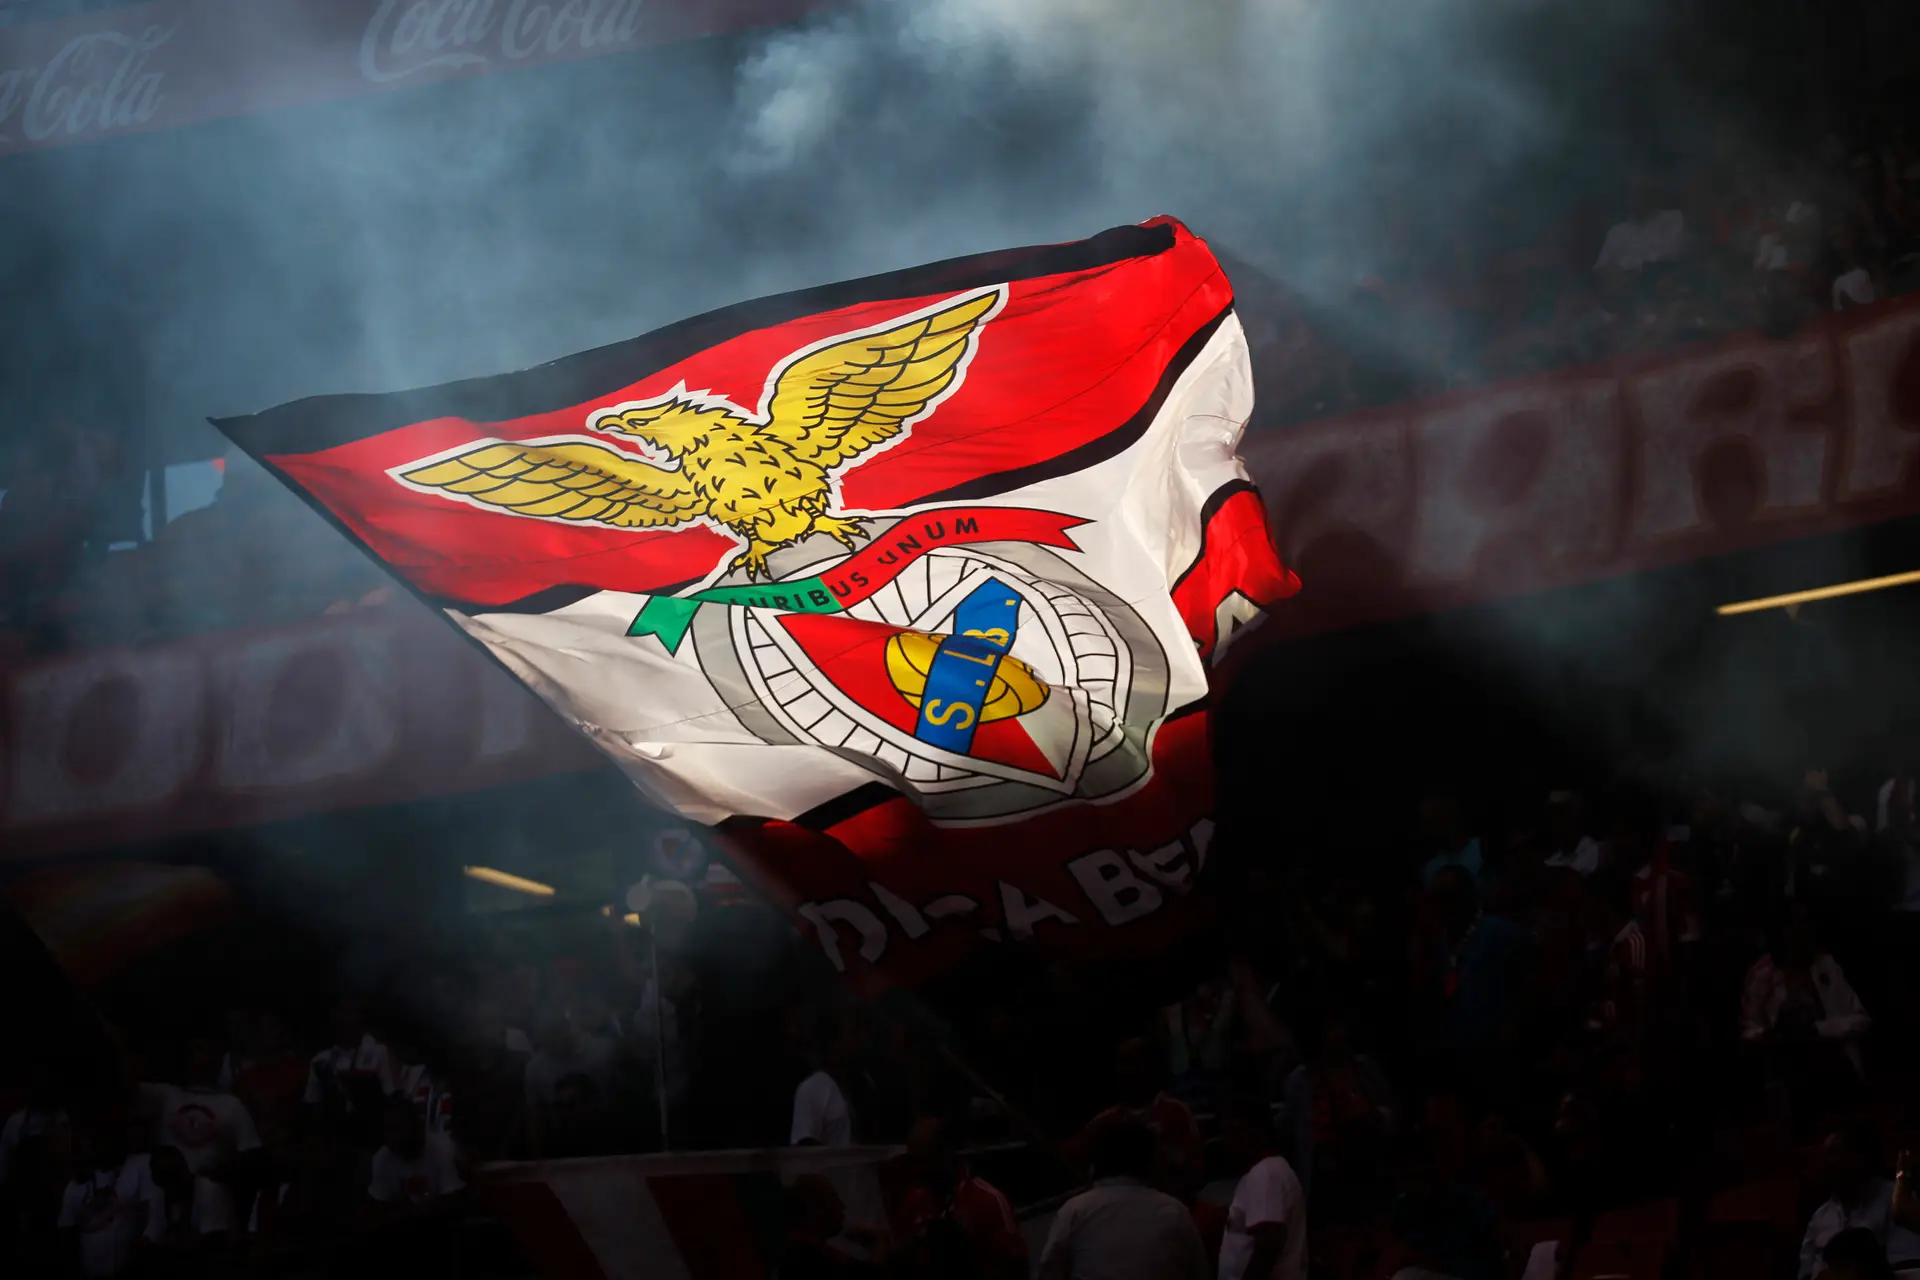 Atenção Benfica: Spartak de Rui Vitória entra com o pé esquerdo no campeonato  russo - Premier League Russa - SAPO Desporto